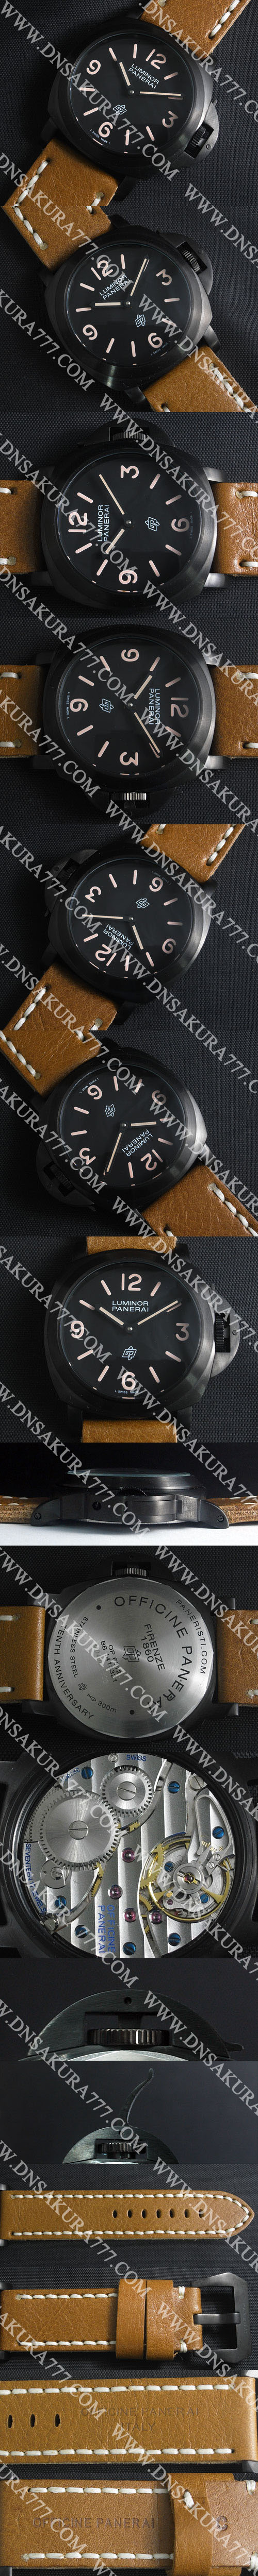 【激安腕時計】 PANERAI コピー時計 ルミノール PAM00360 Asian Unitas 6497搭載 (手巻き) ブラック